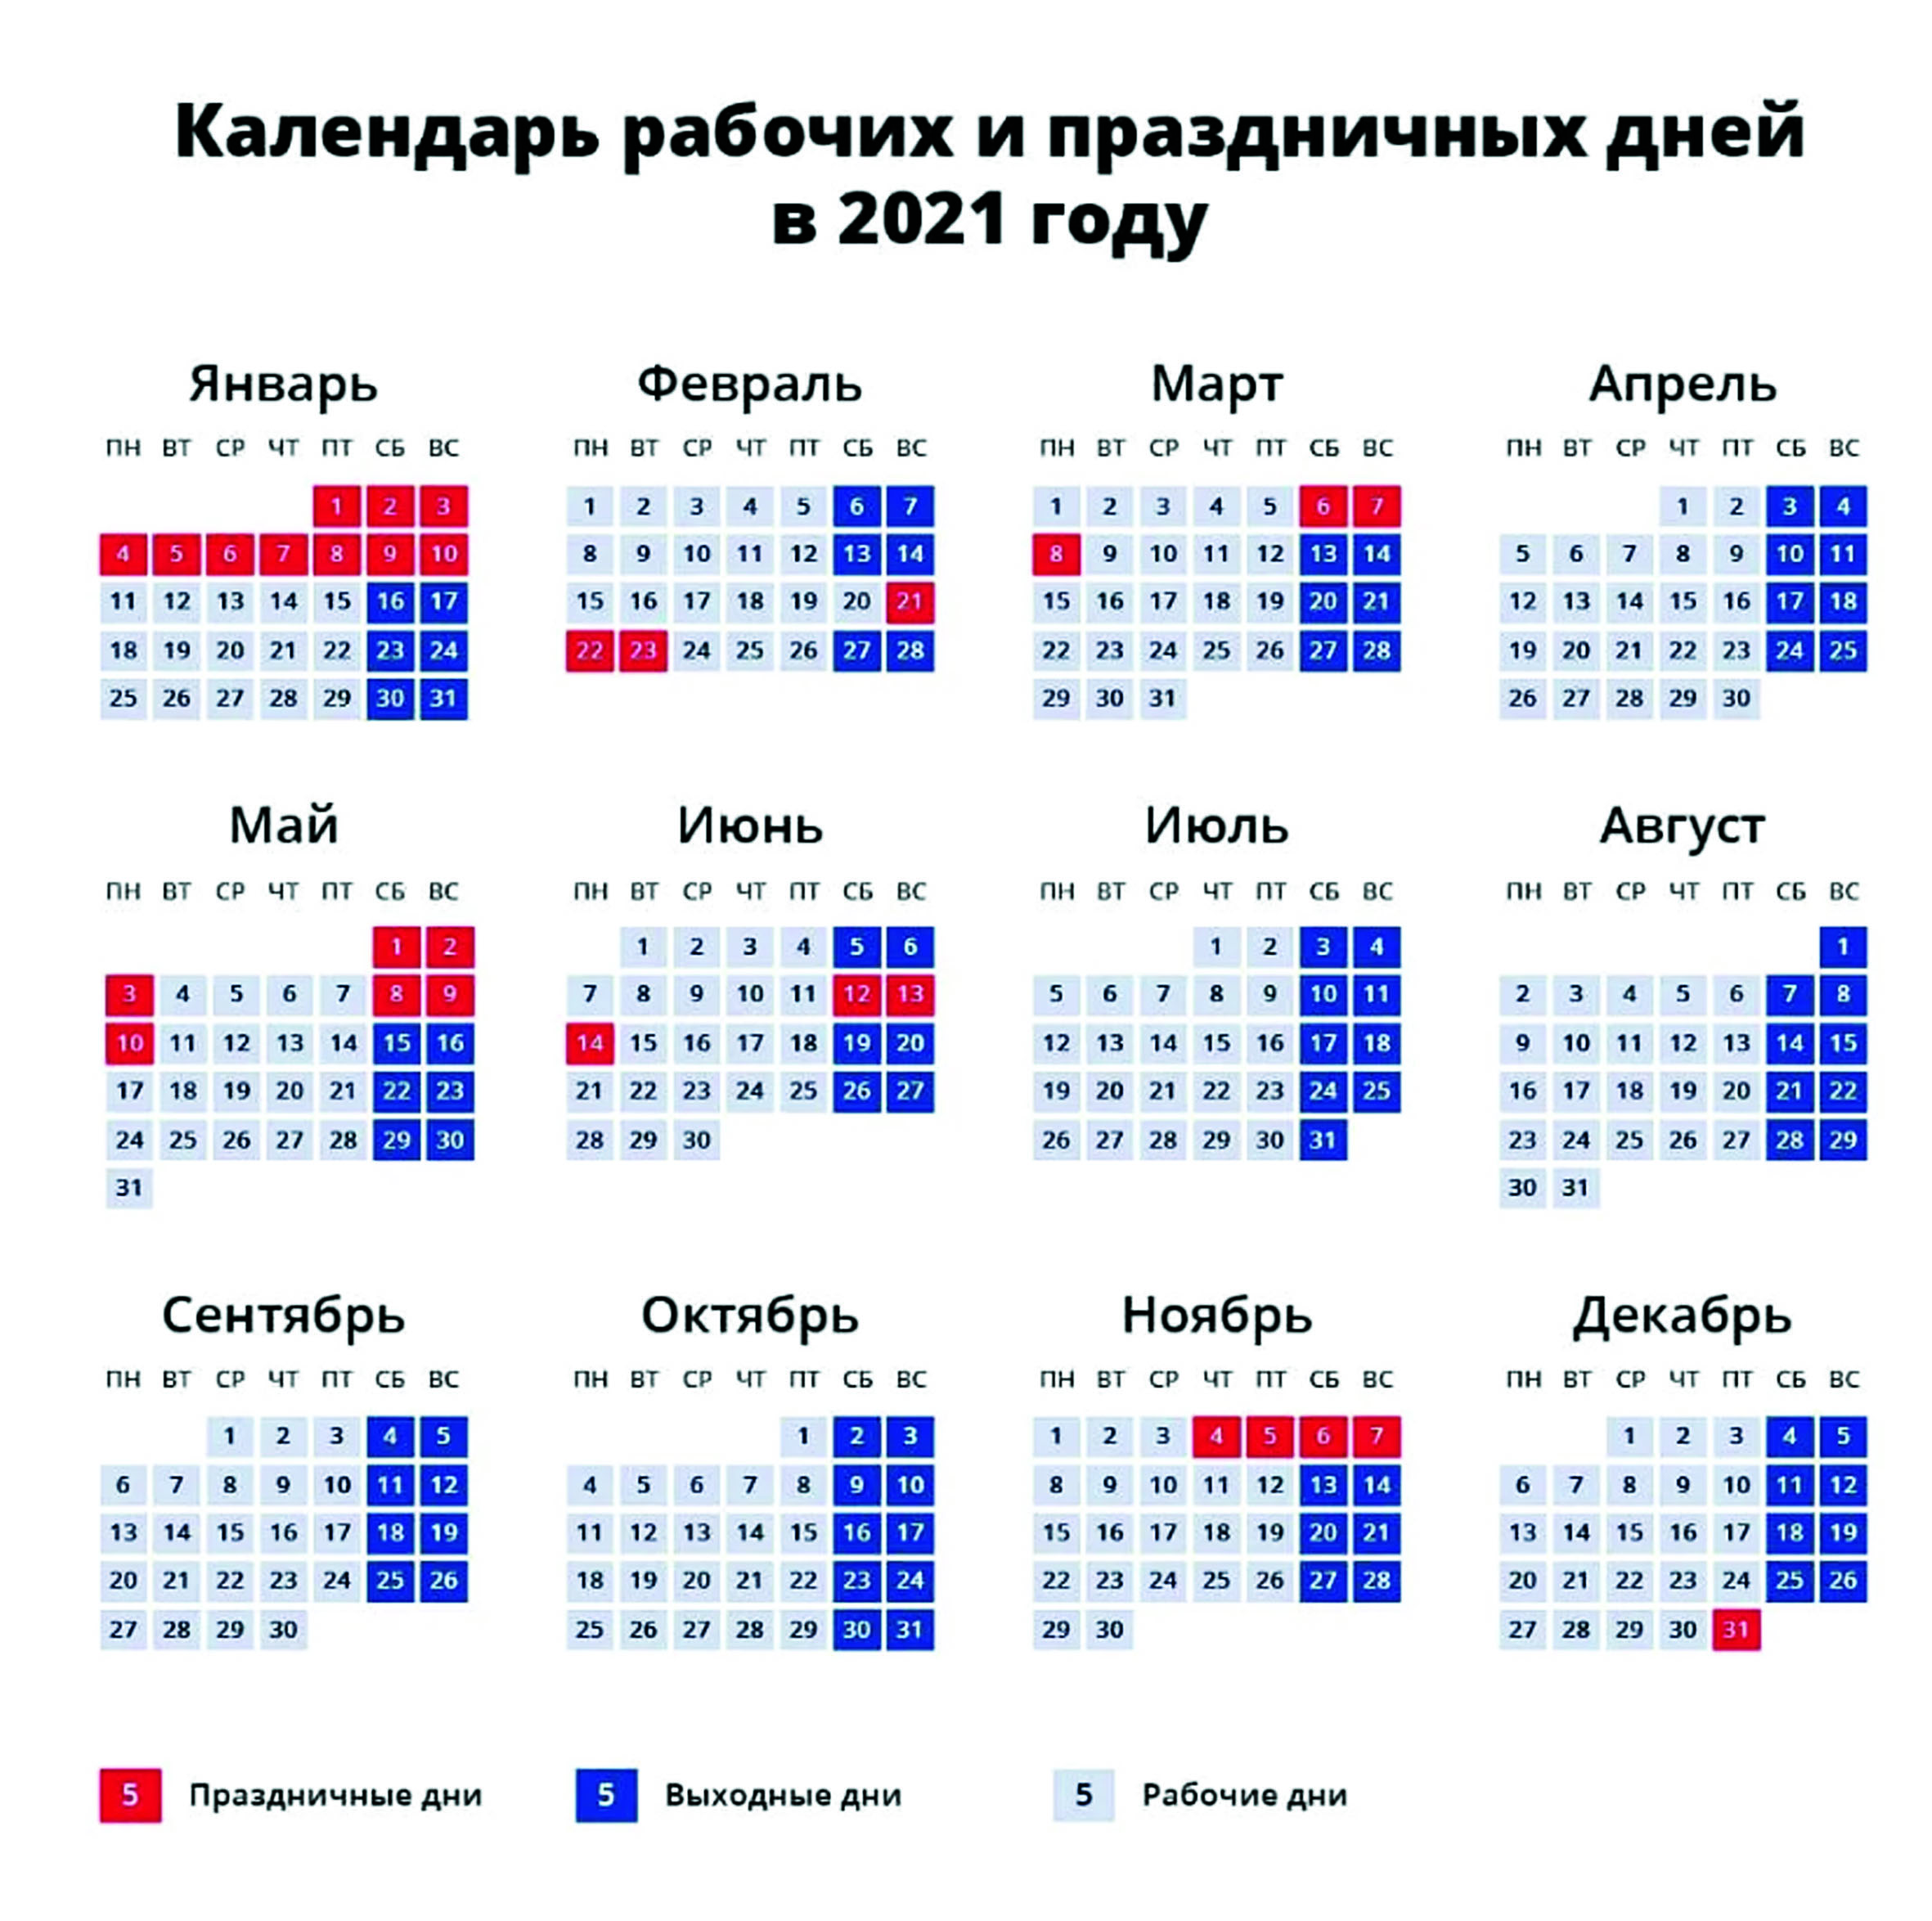 Какие дни отдыхает россия в мае. Нерабочие дни в 2021 году в России. Выходные и праздничные дни в 2021 году в России. Праздничные дни в 2021 году в России календарь утвержденный. Нерабочие дни в ноябре 2021 года в России.